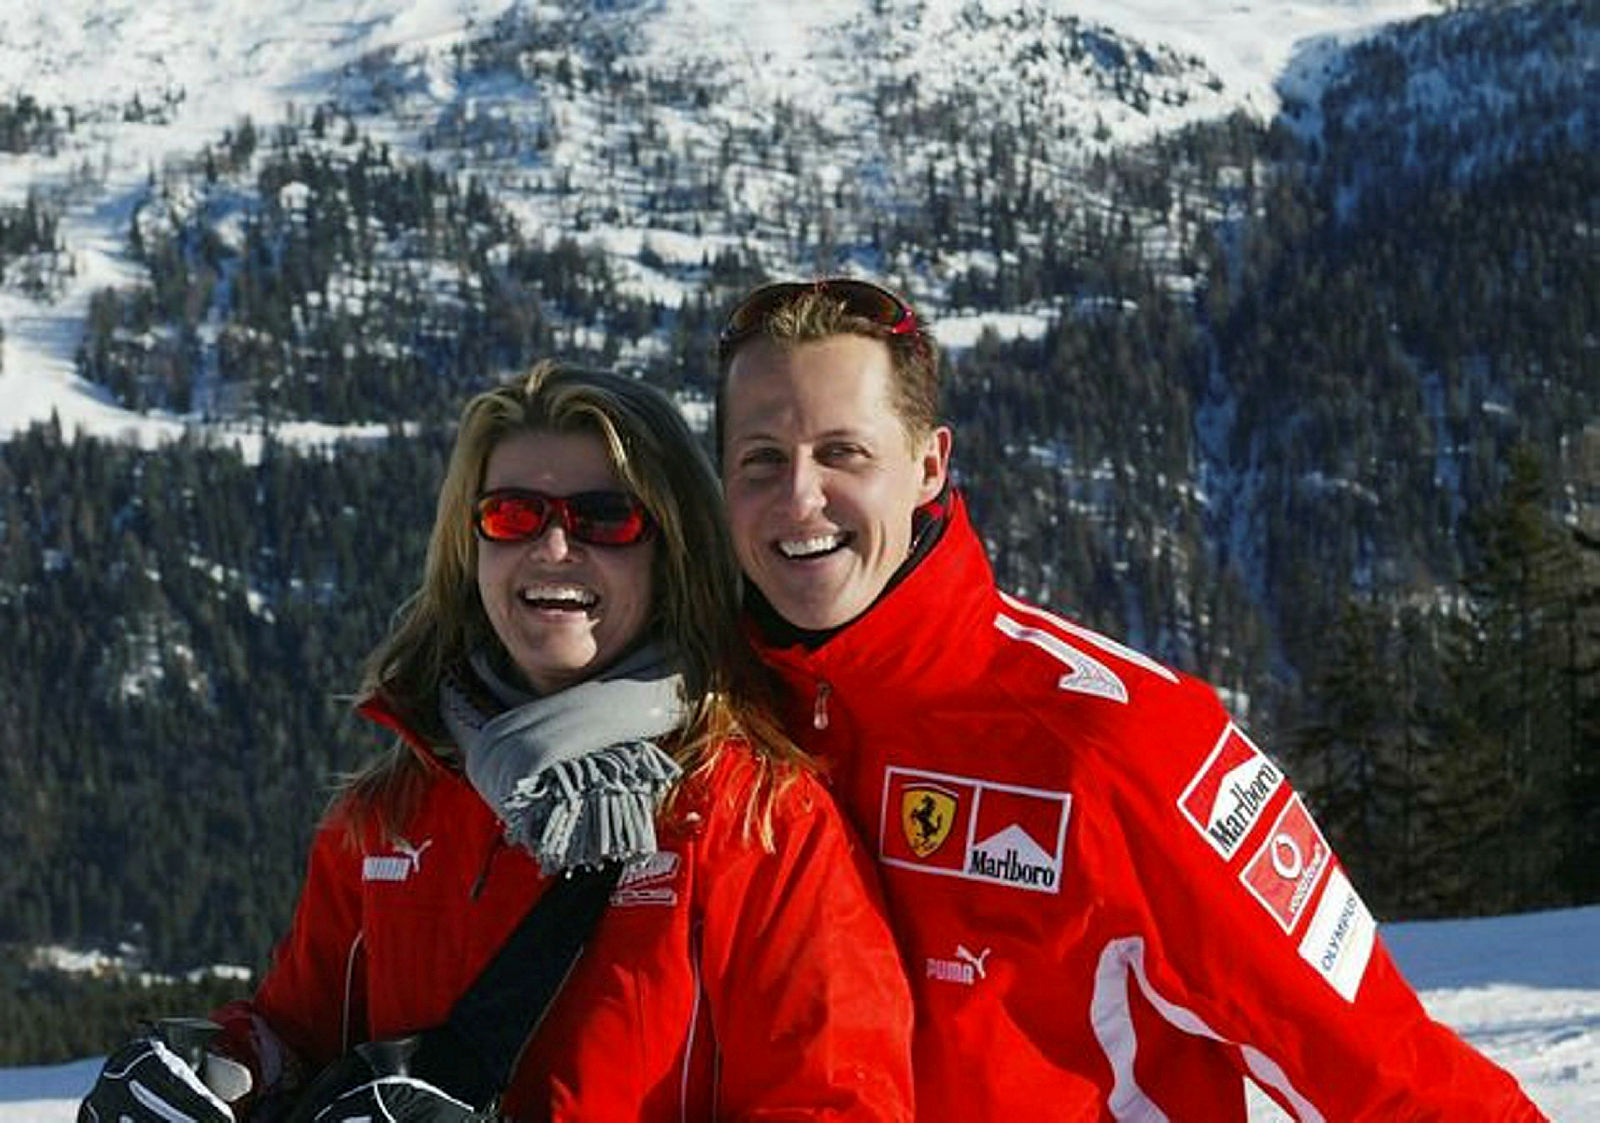 F1 pilotu Michael Schumacher hakkında yeni gelişme! Michael Schumacher’in sağlık durumu nasıl?